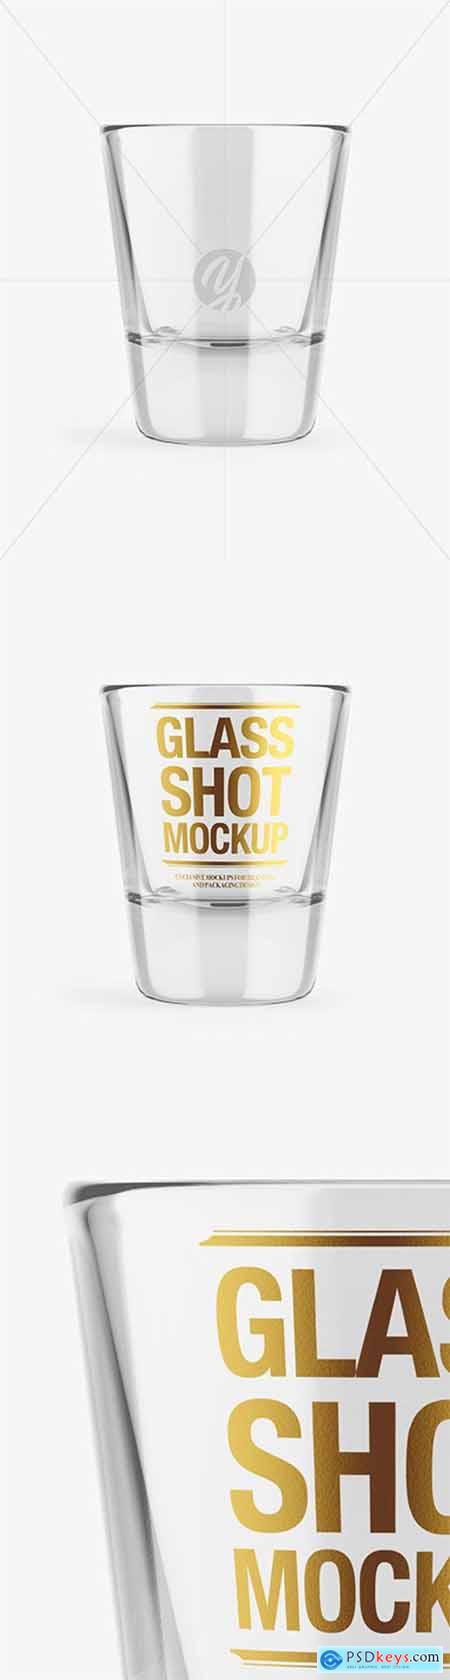 Empty Glass Shot Mockup 64914